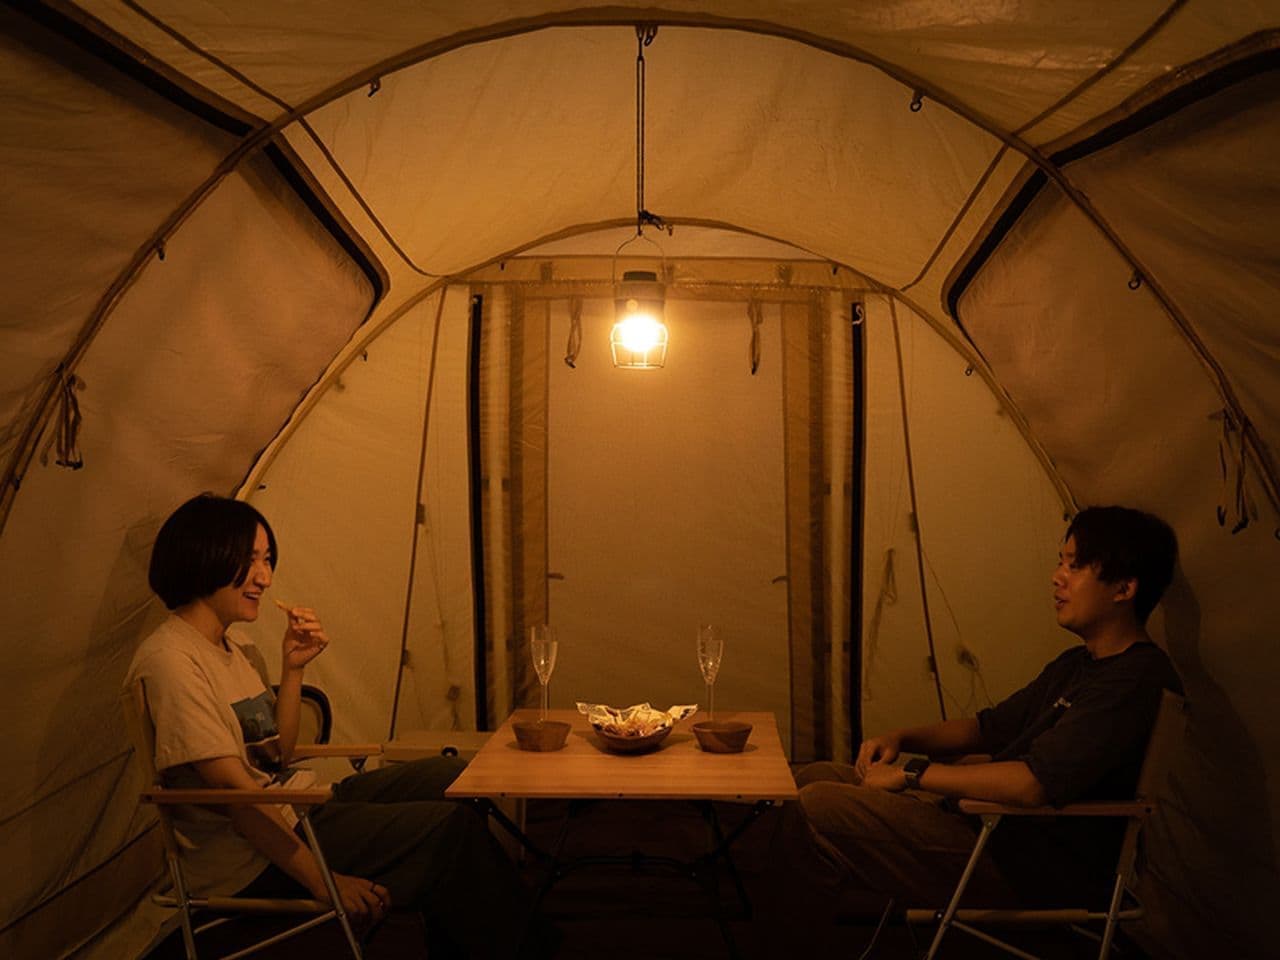 キャンプ用ランタン「オシリピッカリーノ3世」DODから発売 ビンテージランタンの雰囲気と最新機能を融合